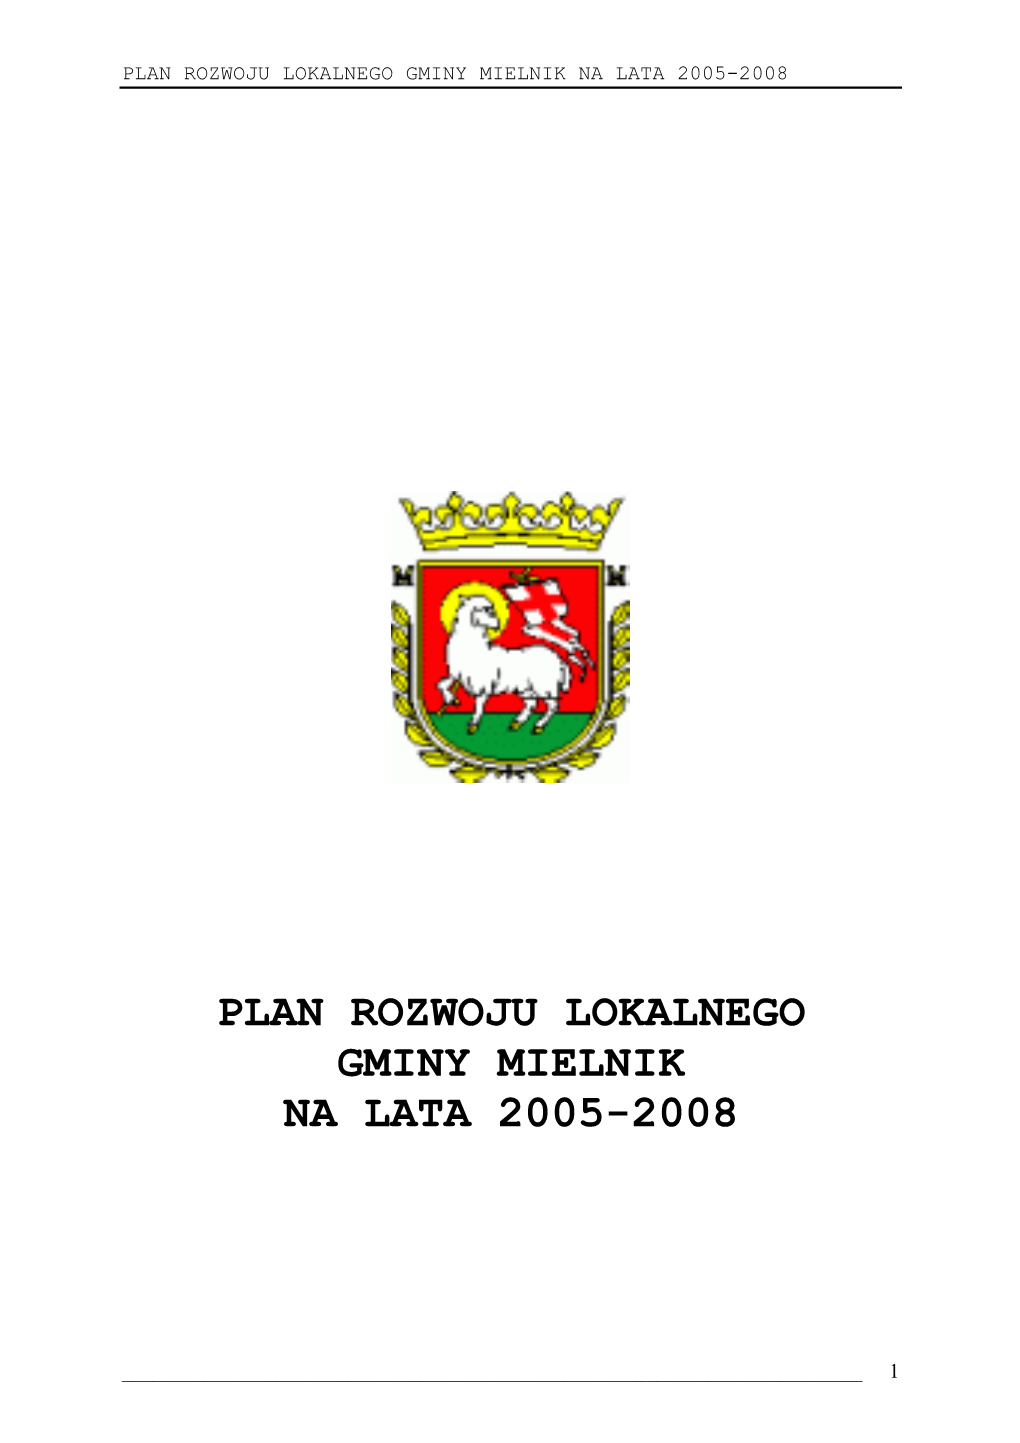 Plan Rozwoju Lokalnego Gminy Mielnik Na Lata 2005-2008